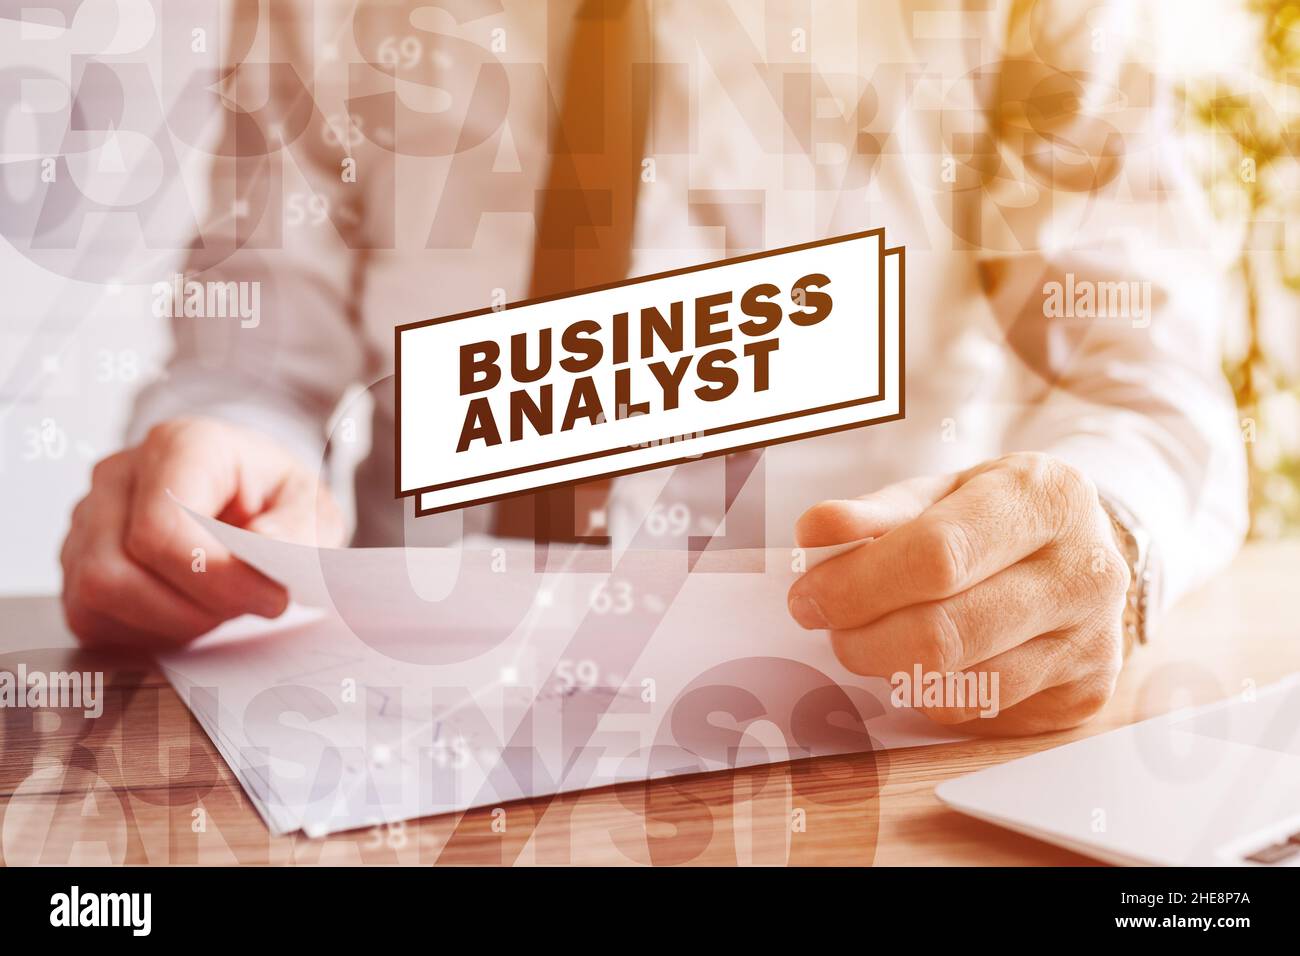 Analista aziendale, uomo d'affari che analizza i rapporti aziendali, immagine potenziata digitalmente con focus selettivo Foto Stock